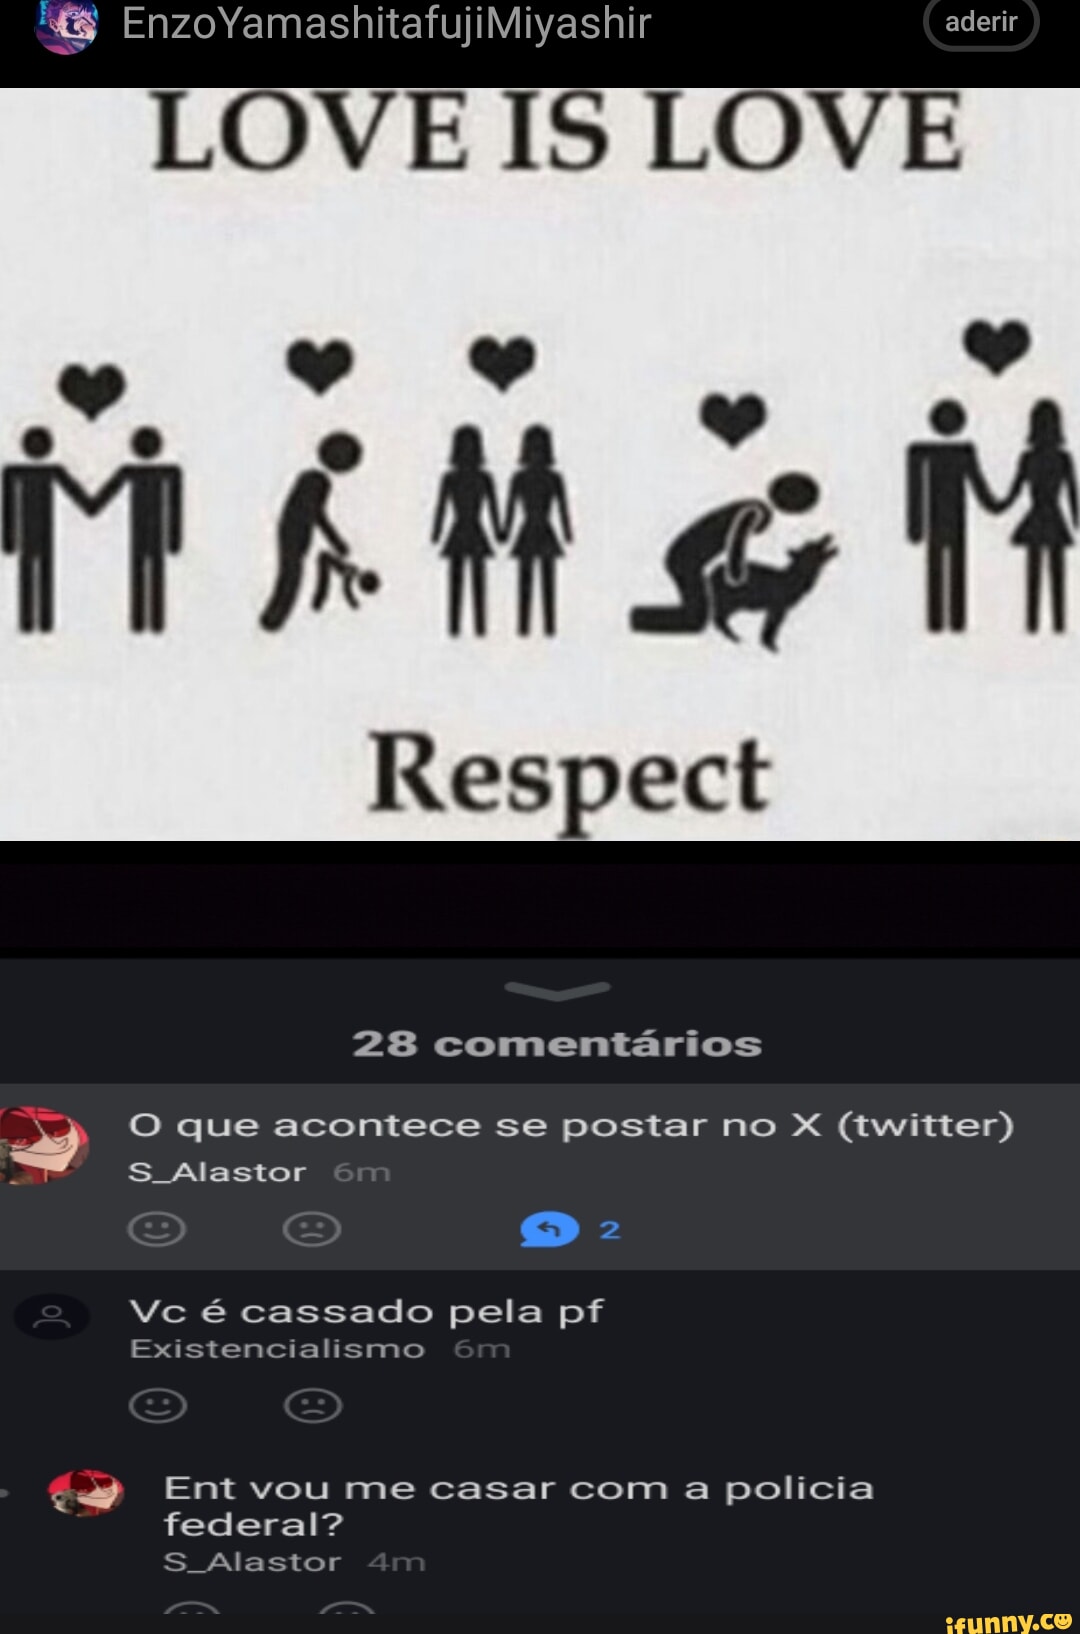 Memes de imagem oiXiybQX9 por G3NTRY: 90 comentários - iFunny Brazil